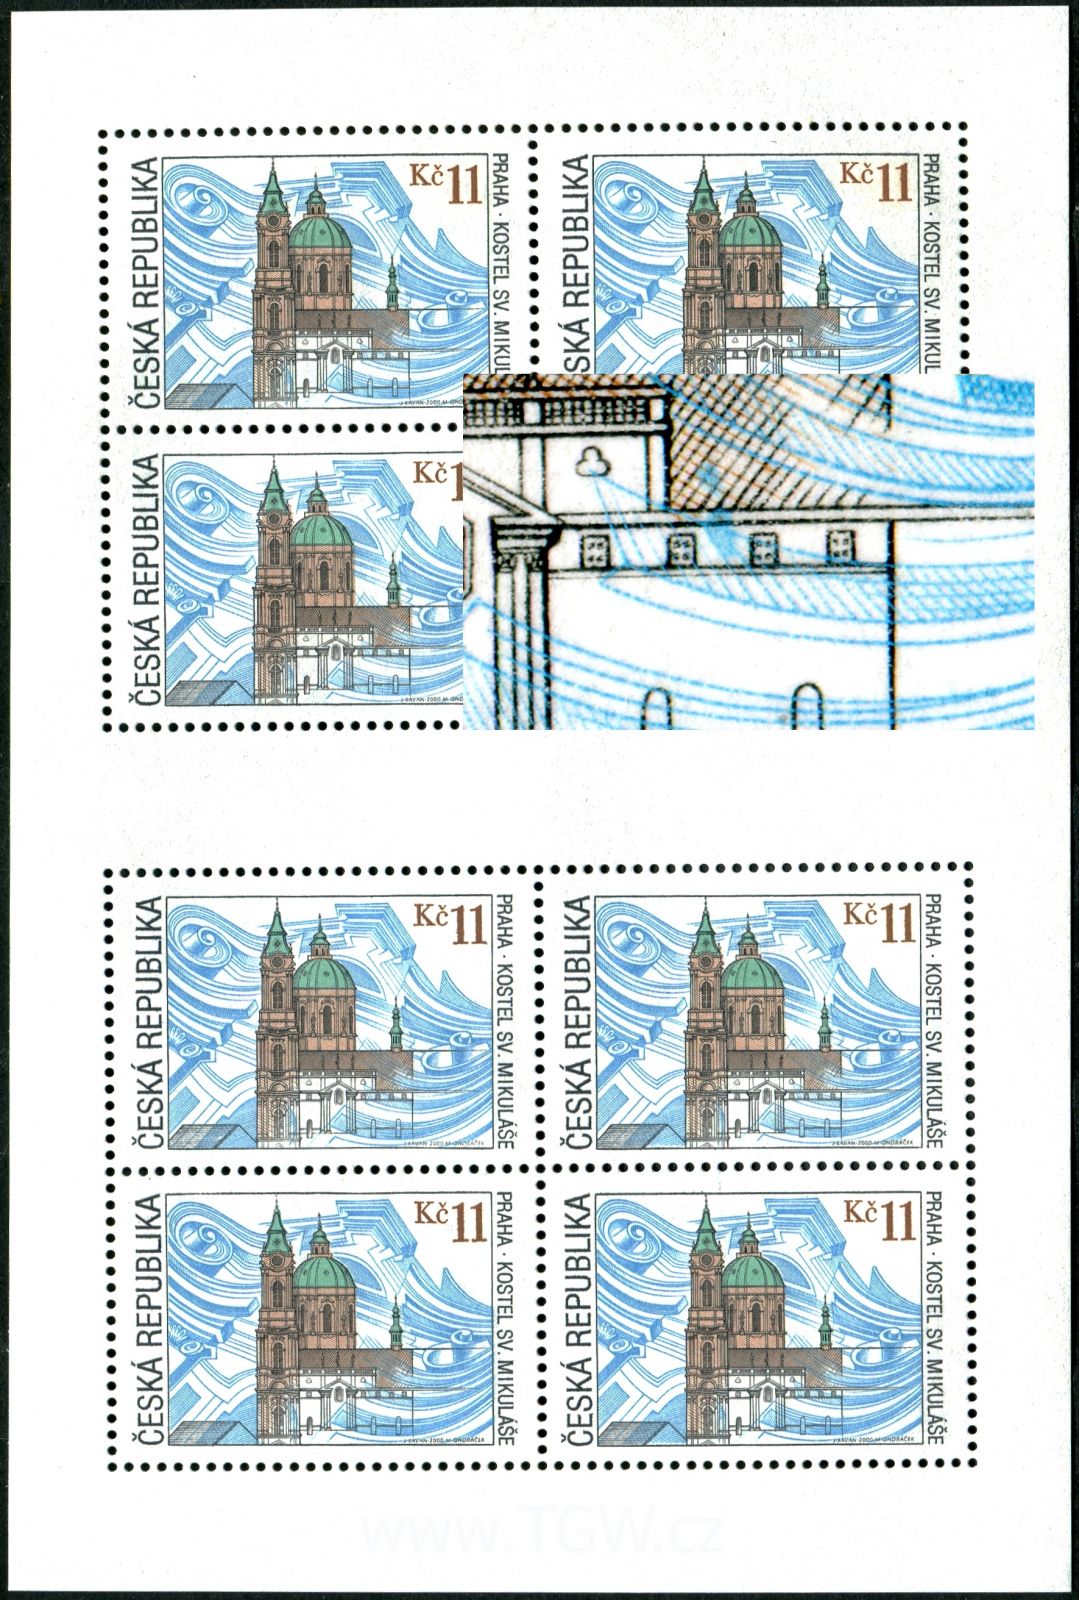 Česká pošta (2000) PL 262 ** Česká republika - DV: zp 2 - modrá skvrna u okna